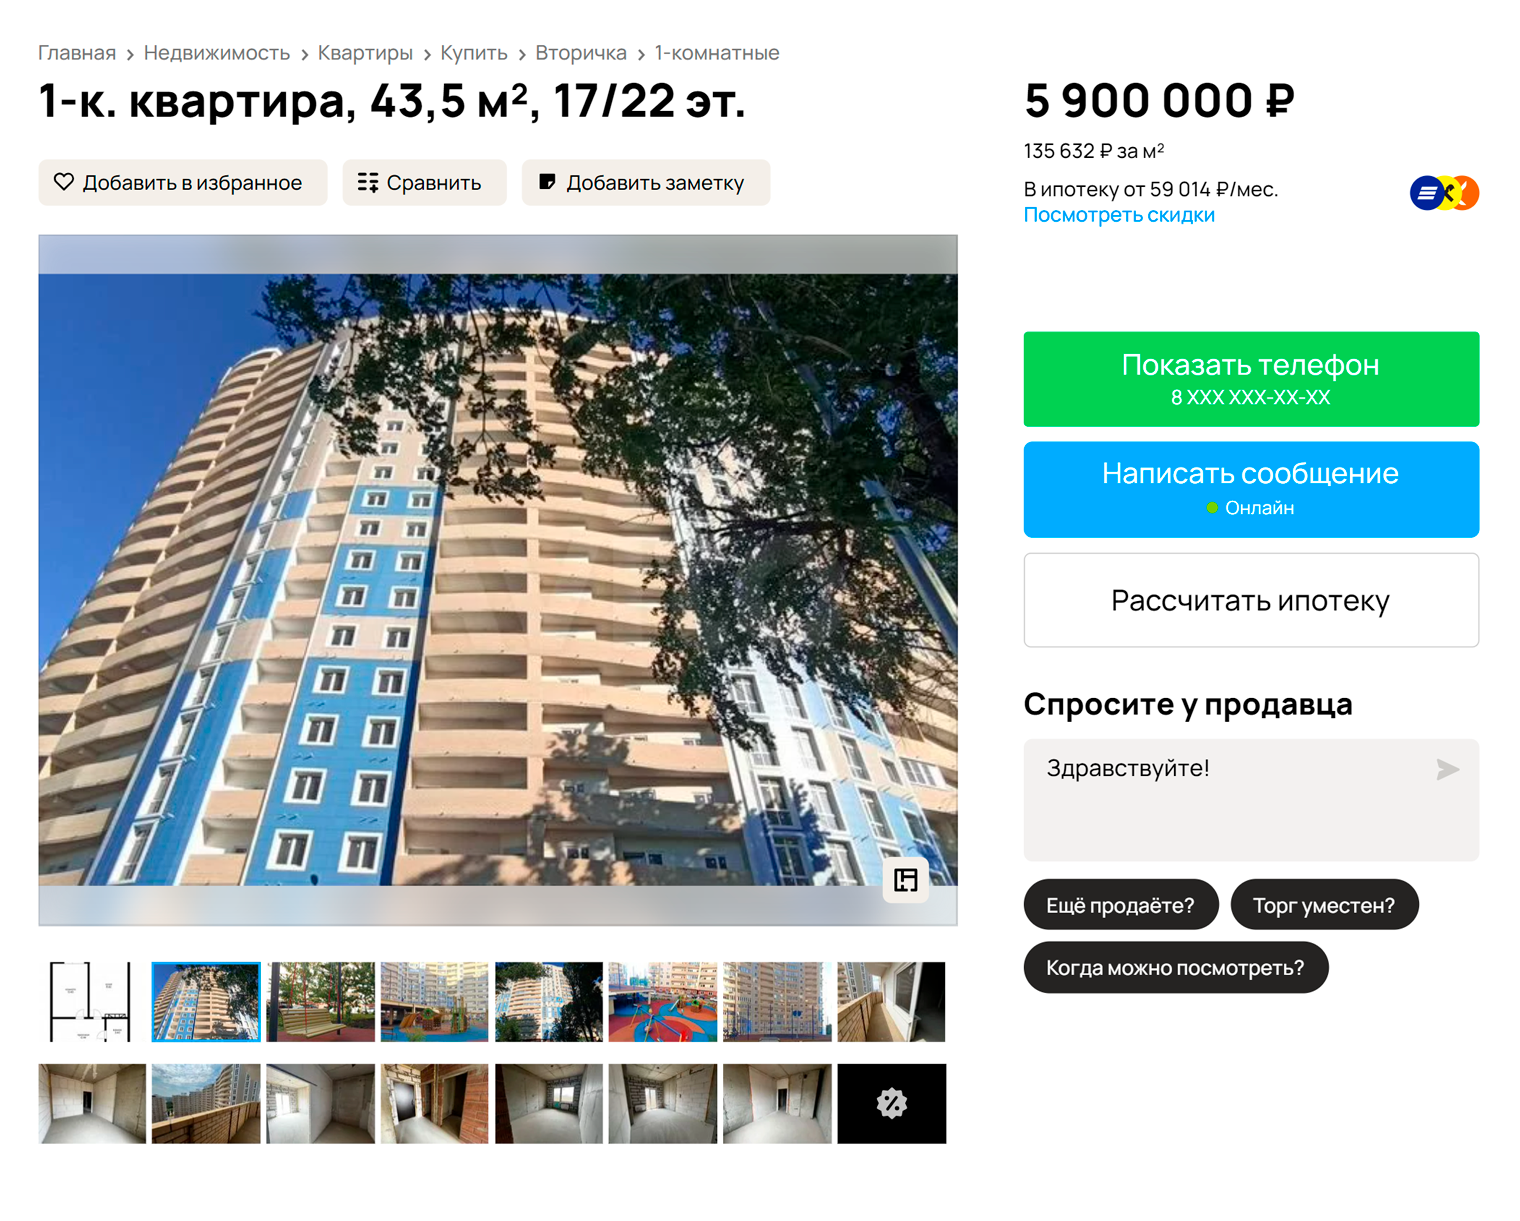 Стоимость однокомнатной квартиры в новостройке в моем микрорайоне — от 5,5 млн, на вторичном рынке — от 5 млн. Источник: avito.ru